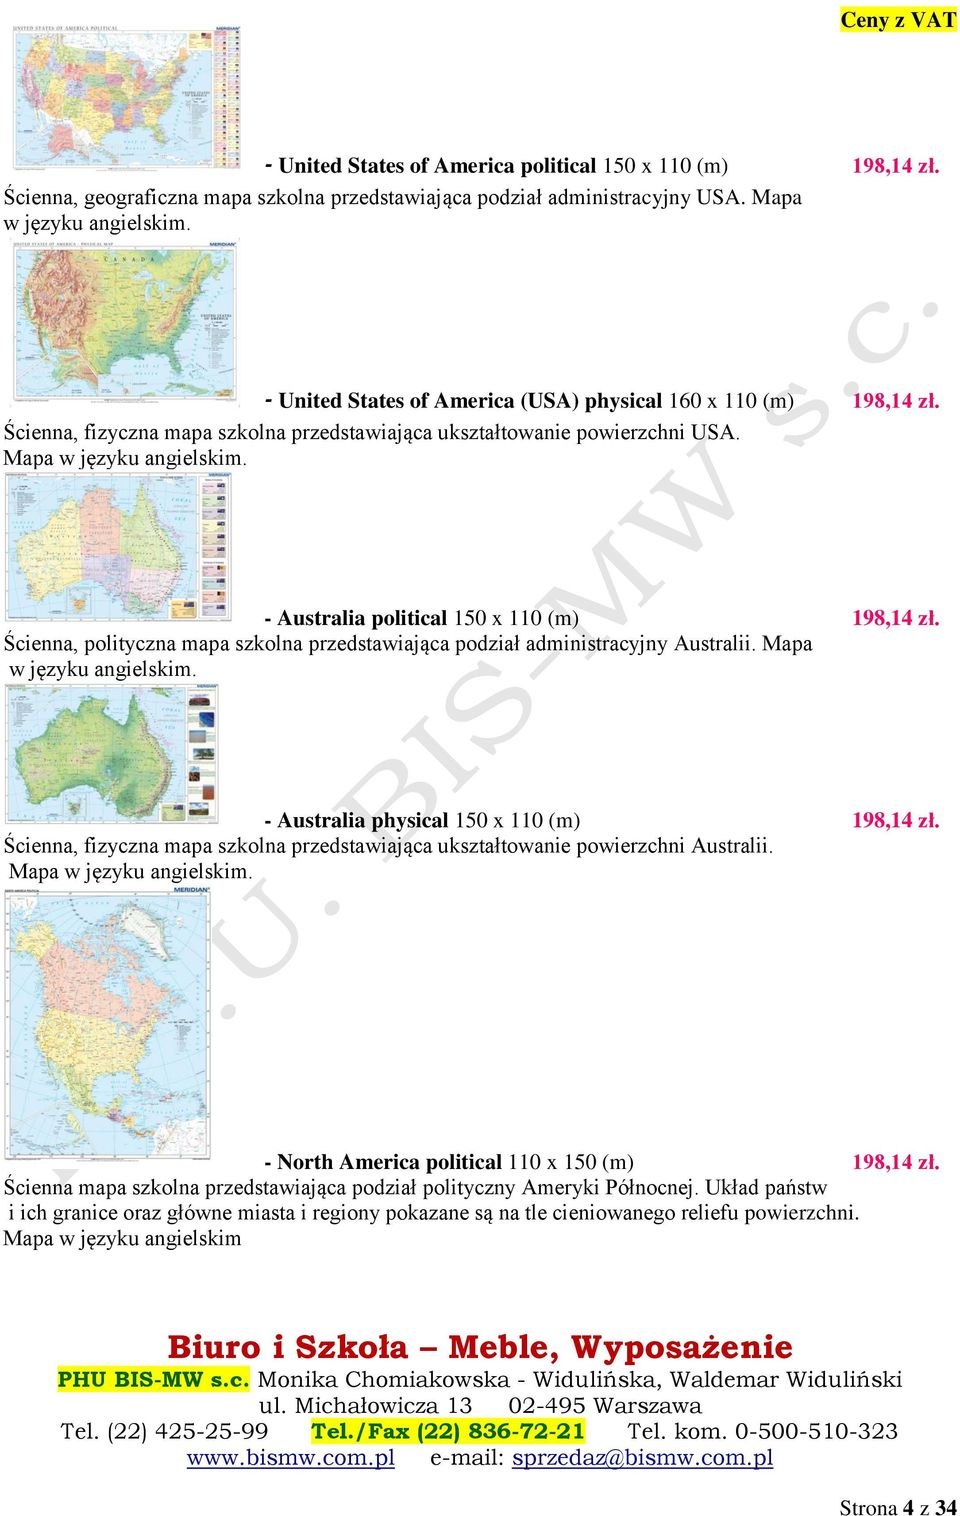 - Australia political 150 x 110 (m) 198,14 zł. Ścienna, polityczna mapa szkolna przedstawiająca podział administracyjny Australii. Mapa w języku angielskim.